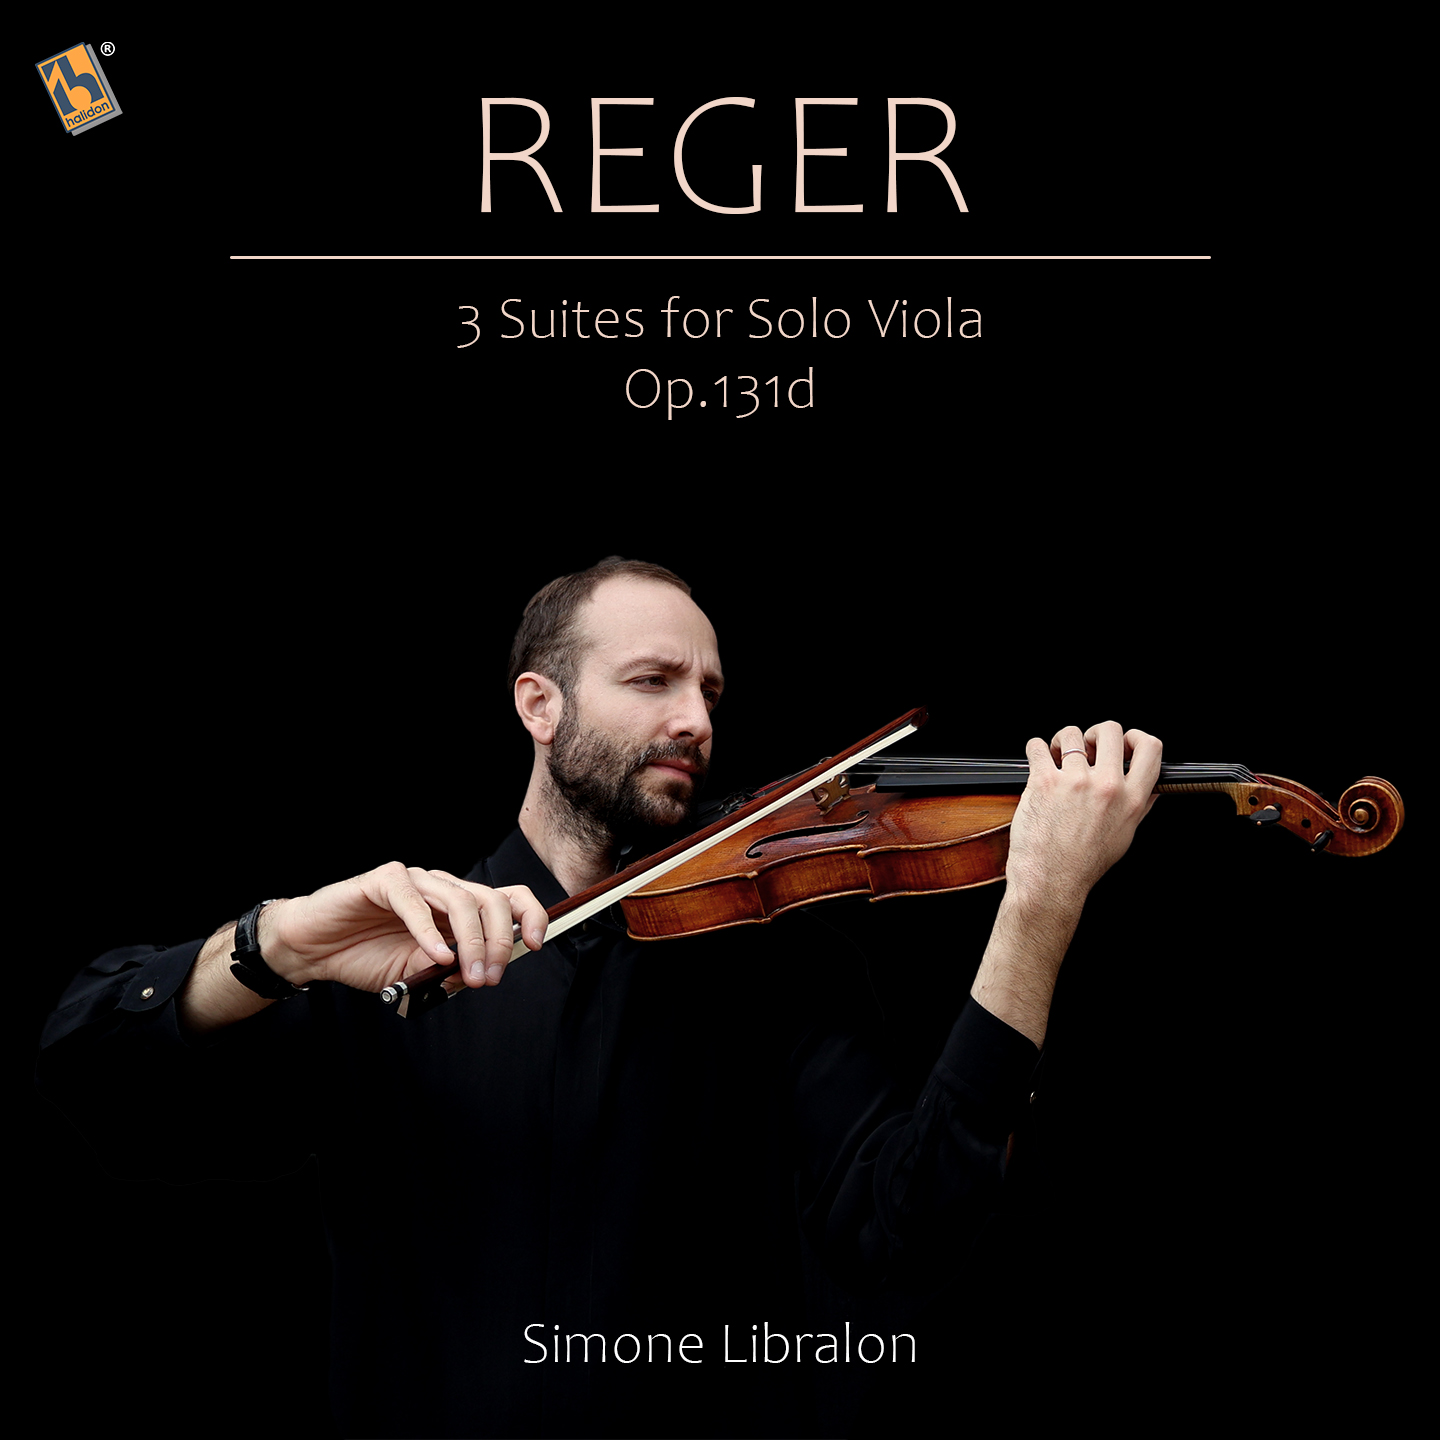 Reger: 3 Suites for Solo Viola, Op. 131d